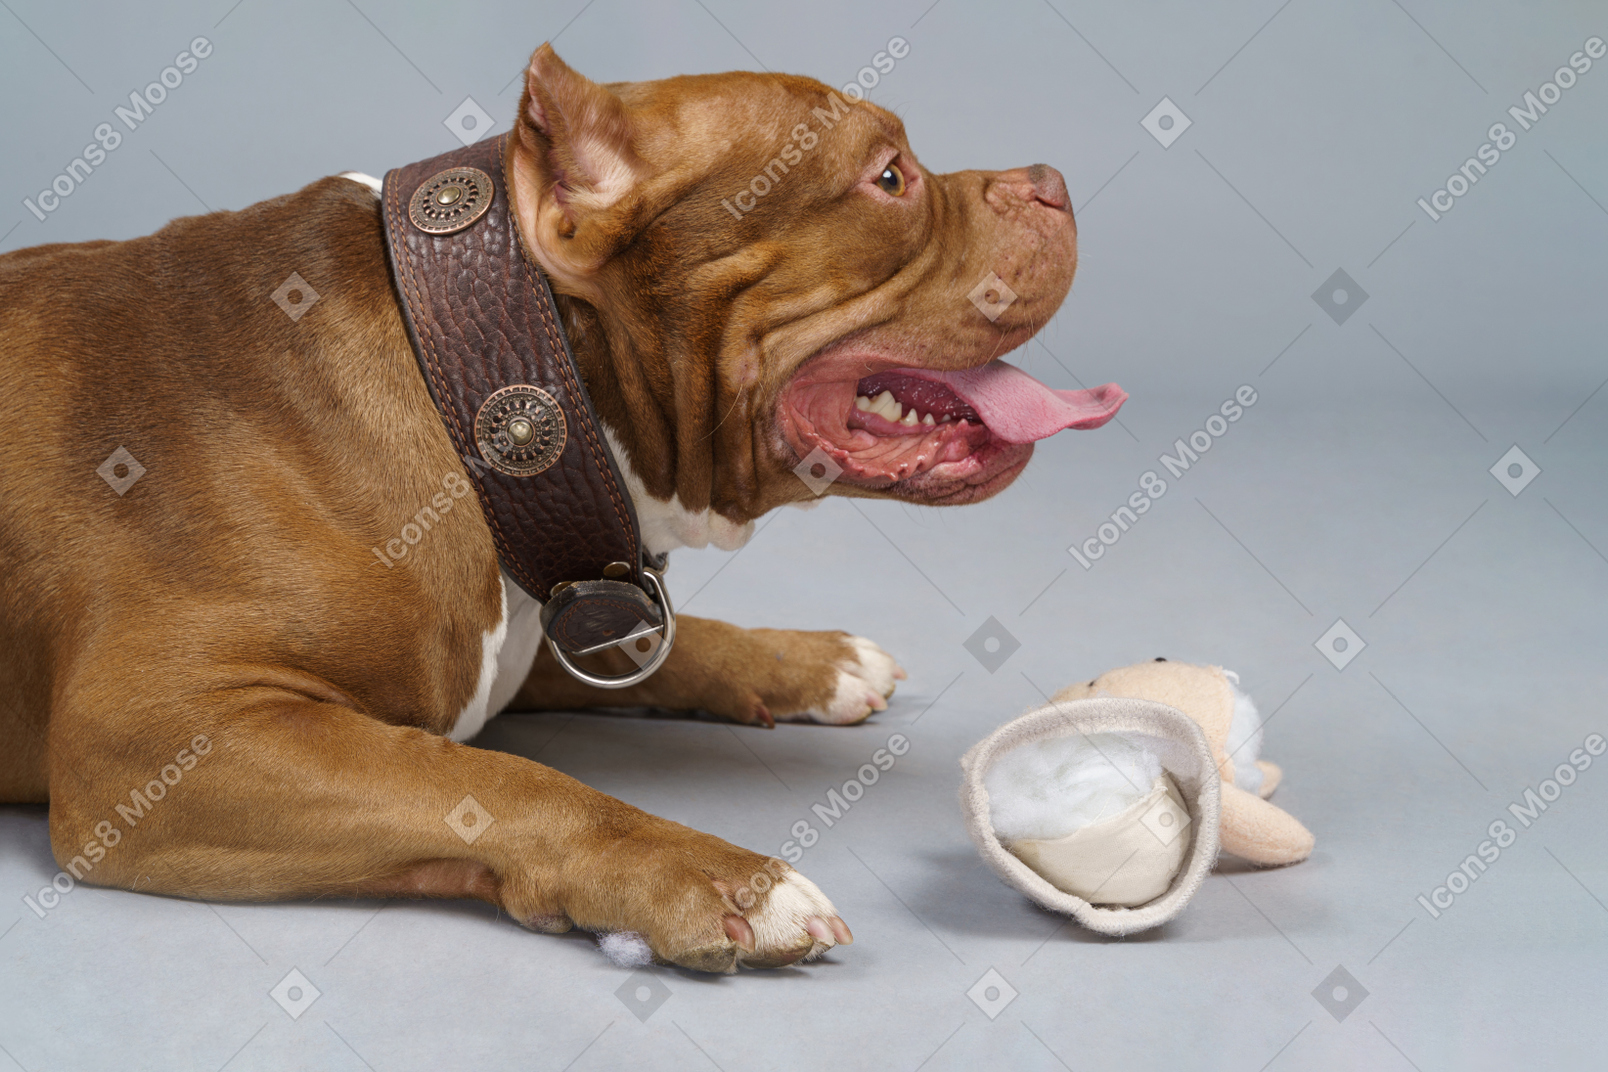 Vista lateral de um bulldog marrom com um coelho de brinquedo olhando para o lado